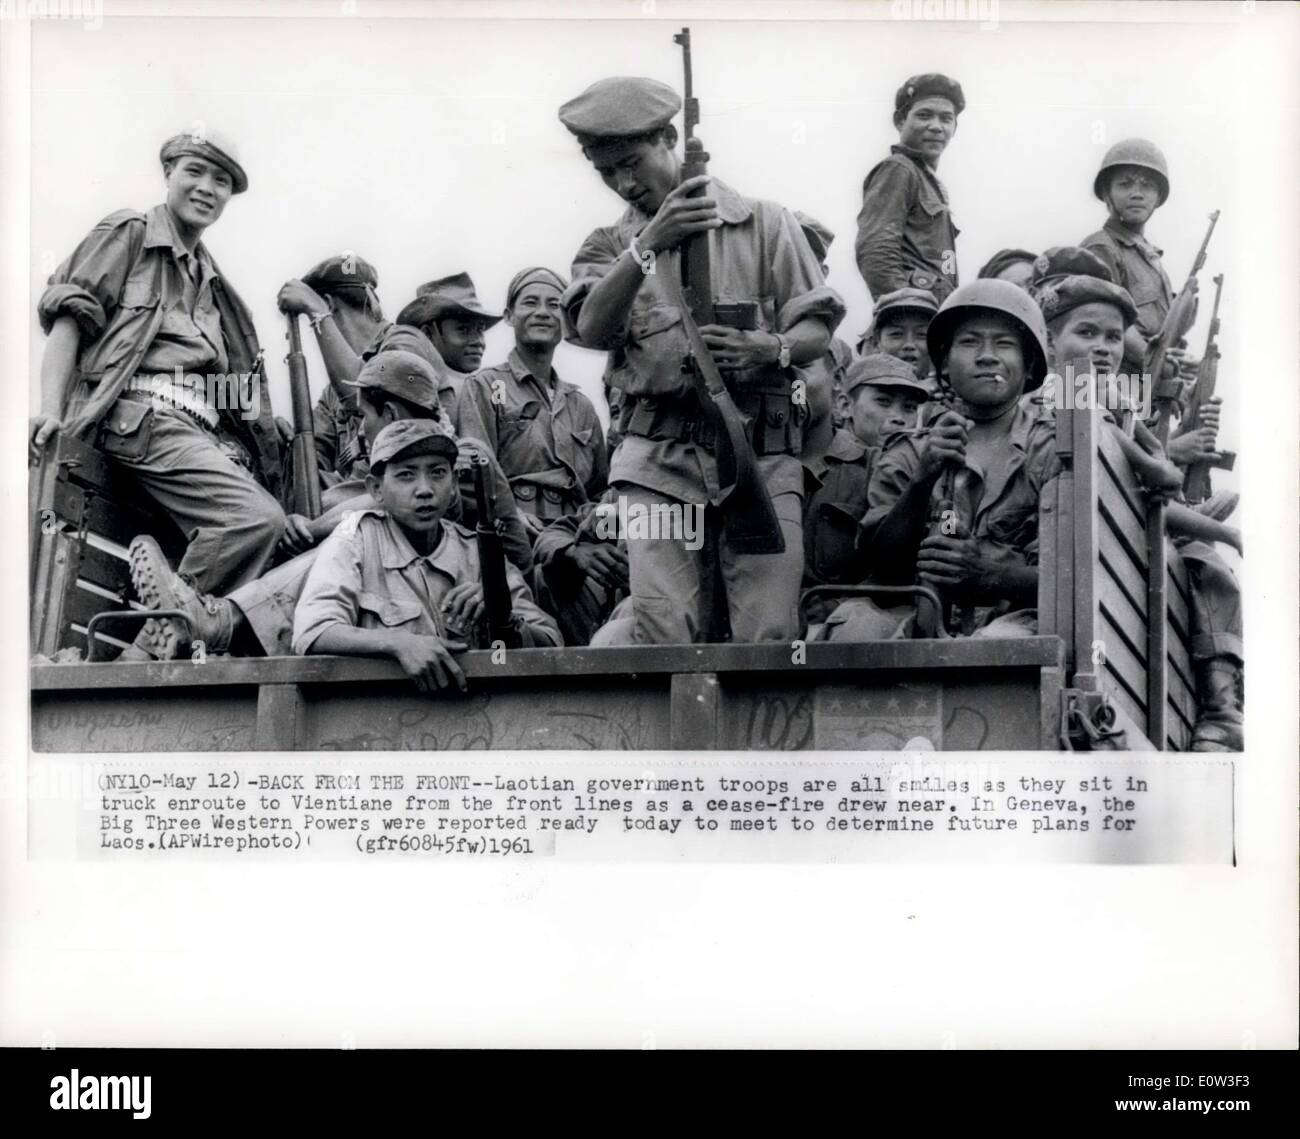 12 maggio 1961 - torna dalla parte anteriore--laotiano le truppe governative sono tutti i sorrisi come essi siedono nel carrello per lungo il tragitto a Vientiane dalle linee del fronte come un cessate il fuoco si avvicinò. A Ginevra i tre grandi potenze occidentali sono stati segnalati oggi pronto a soddisfare per determinare i piani futuri per il Laos APWire (foto) Foto Stock